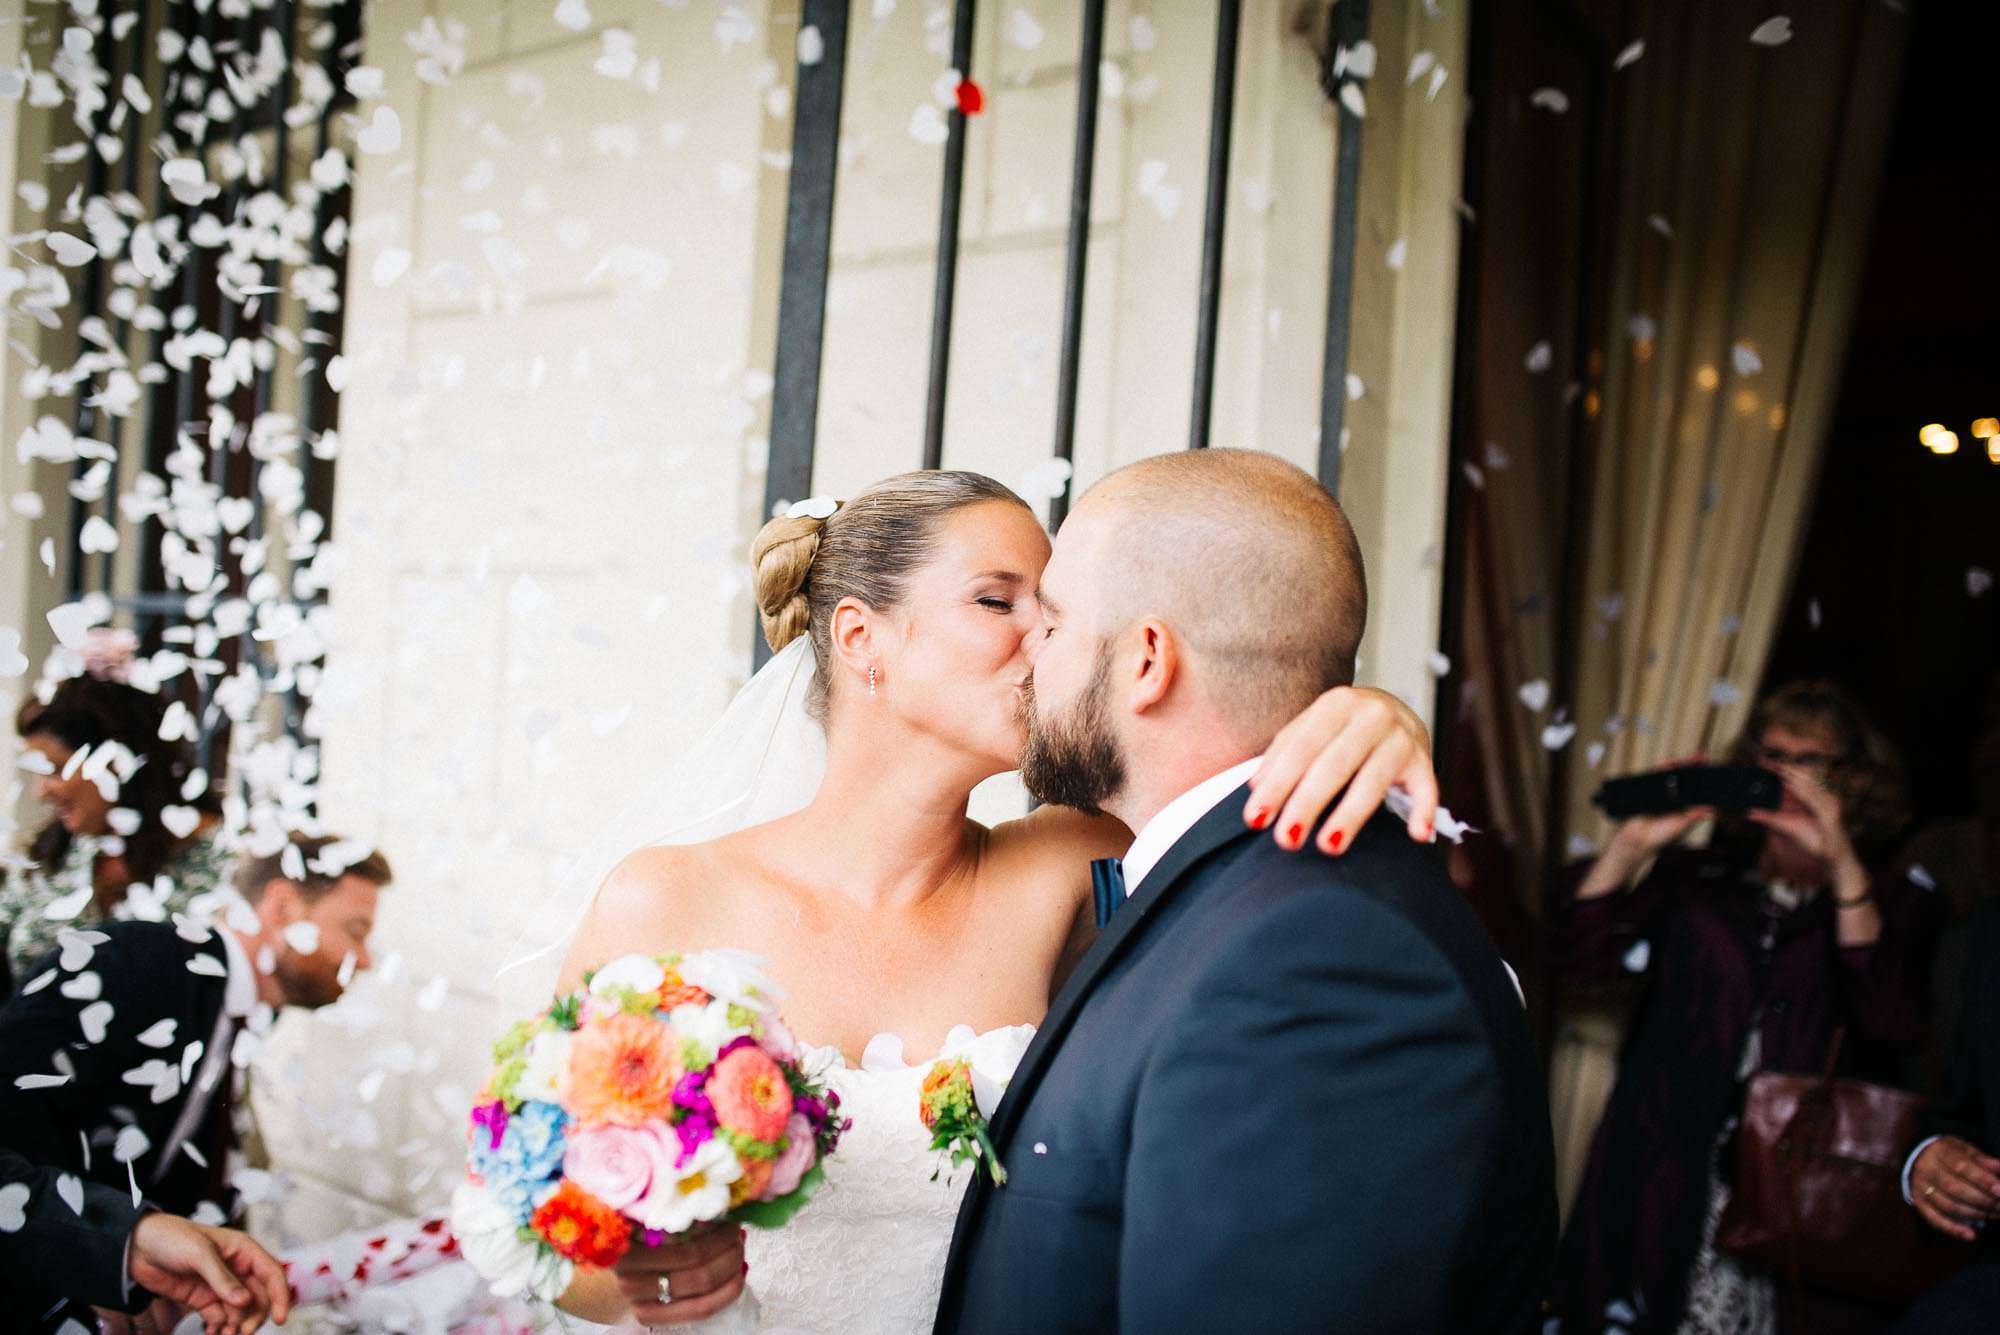 Braut und Bräutigam küssen sich inmitten von Konfetti vor dem Hochzeitsort für ihre Hochzeitsbilder.